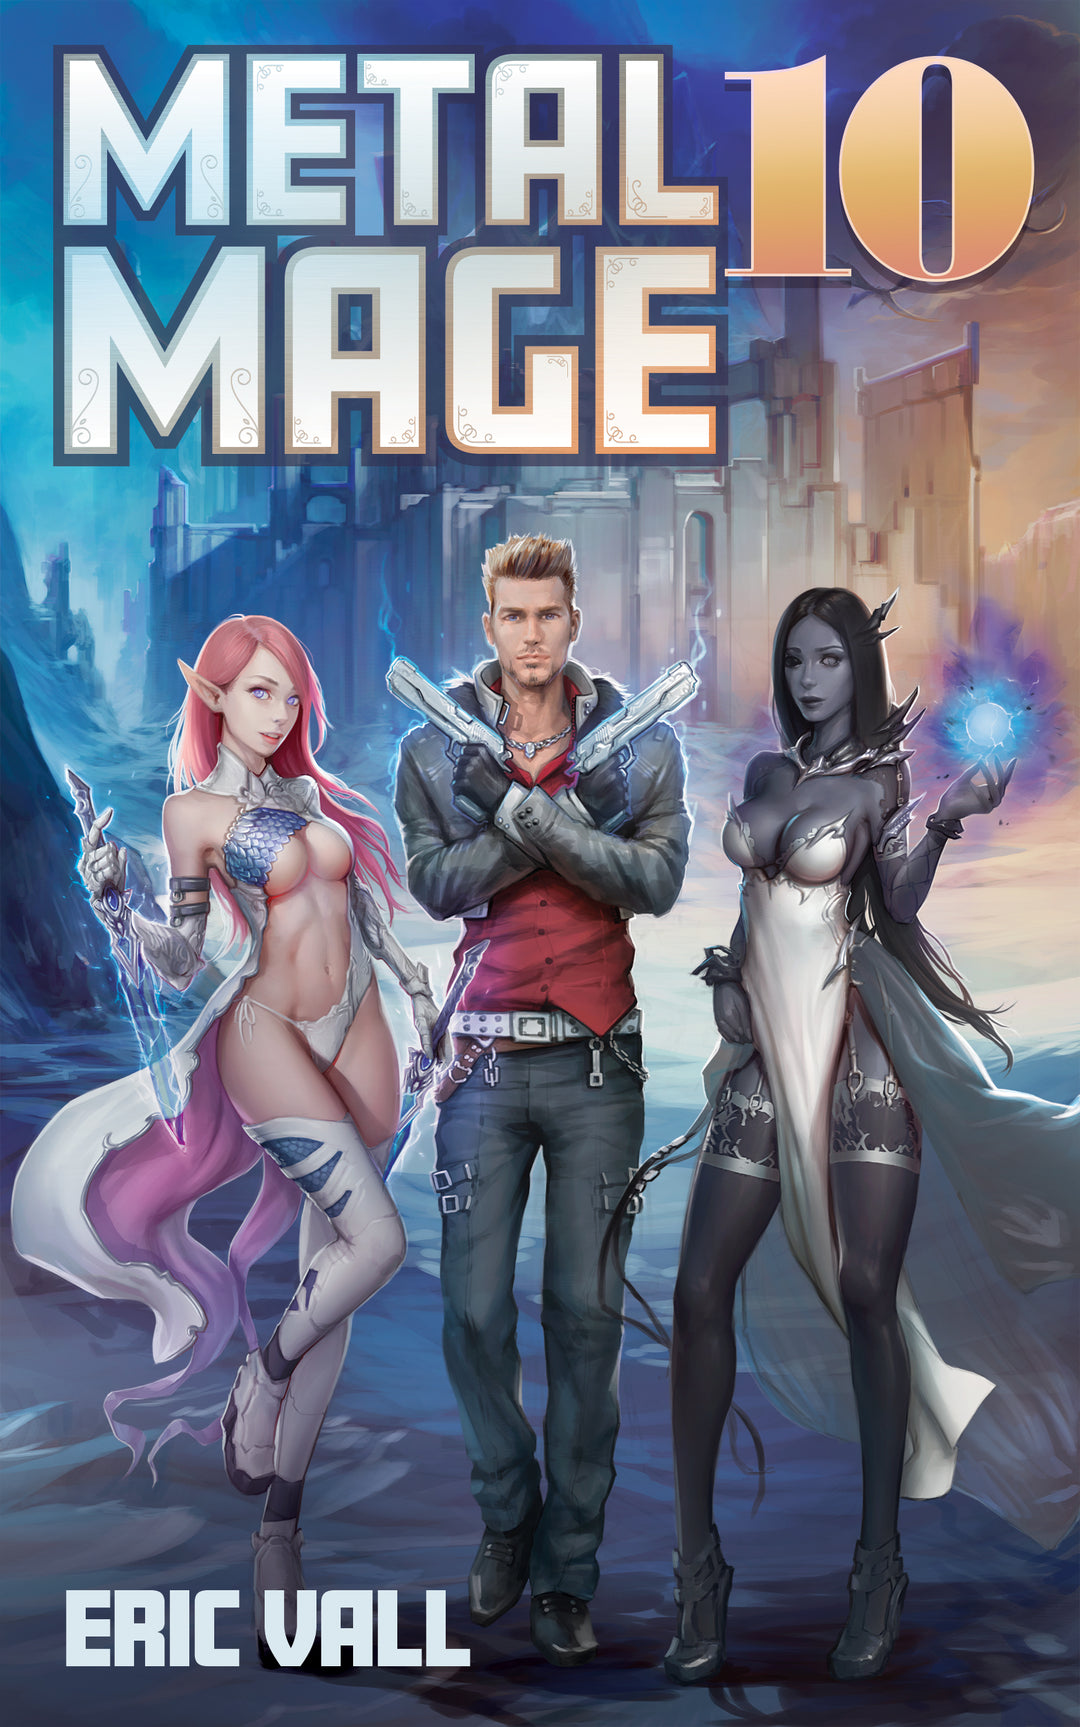 Metal Mage - Book 10